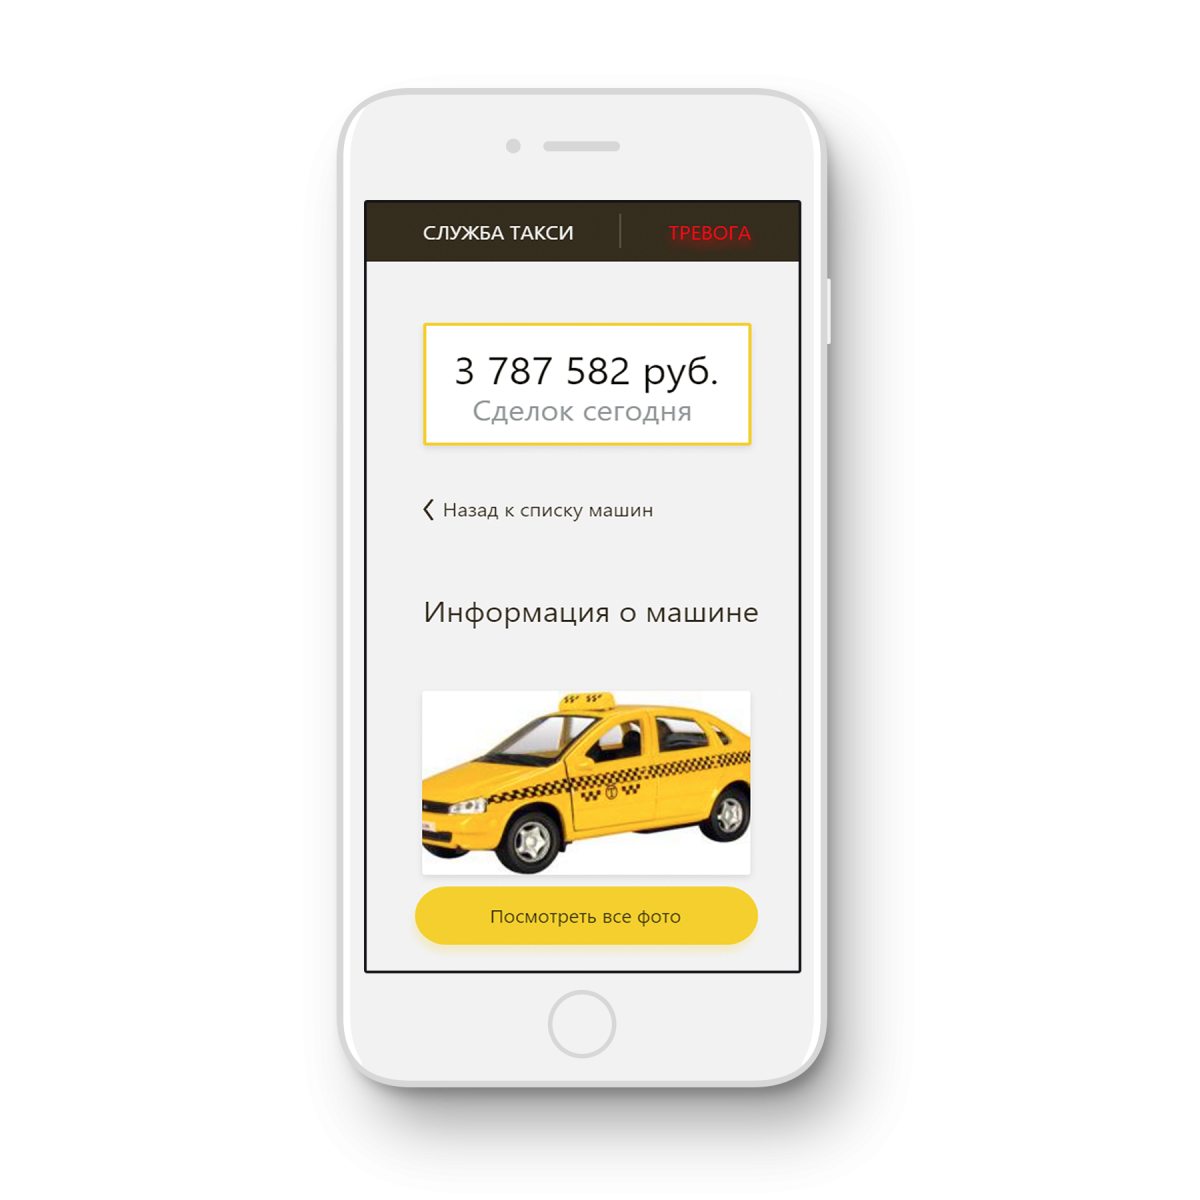 Вызвать такси можно по телефону. Приложение такси. Реклама приложения такси. Мобильное приложение такси.